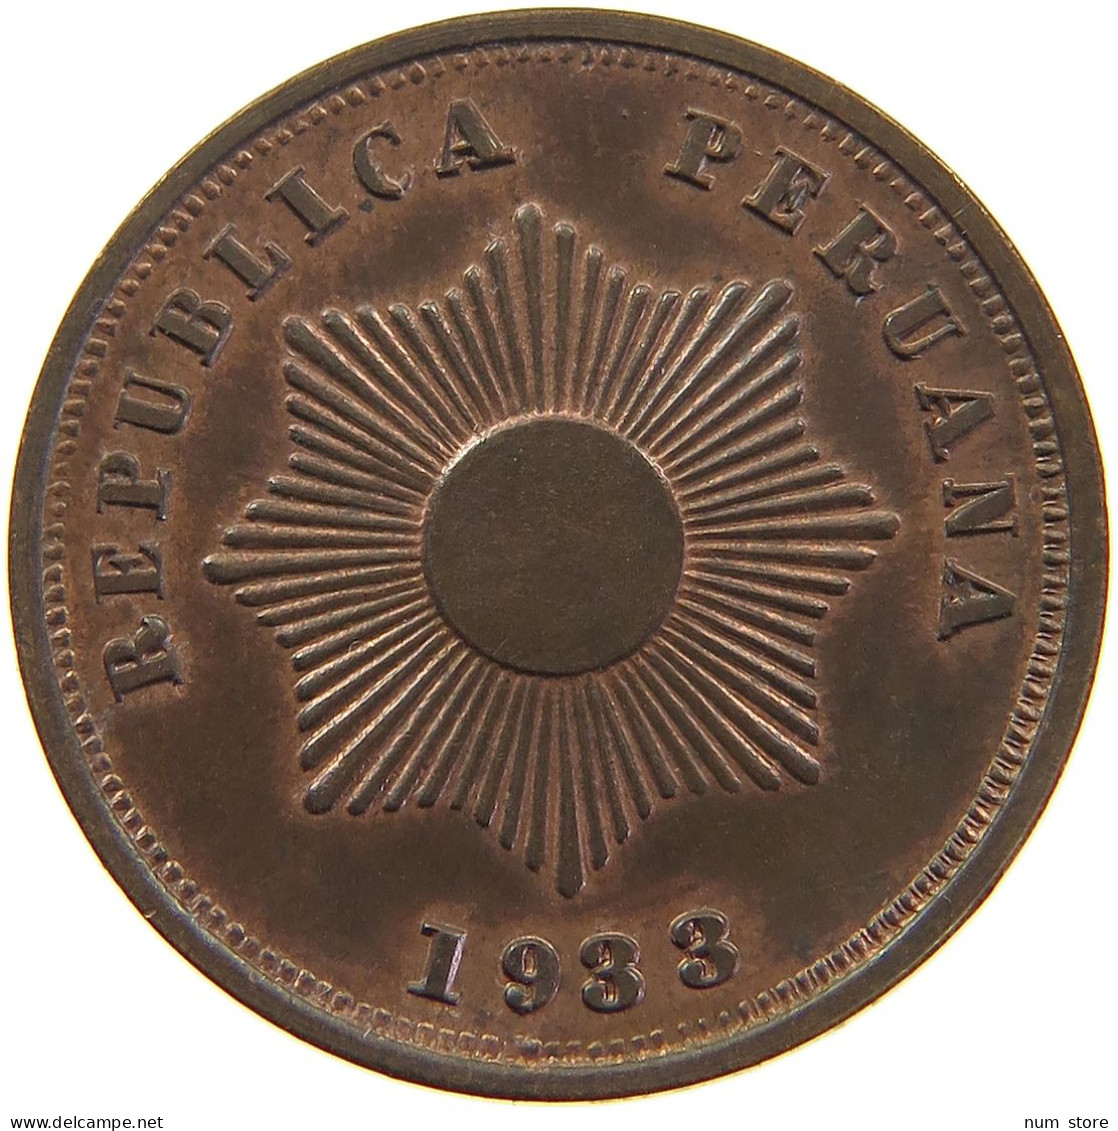 PERU 2 CENTAVOS 1933 UNC #t030 0199 - Peru